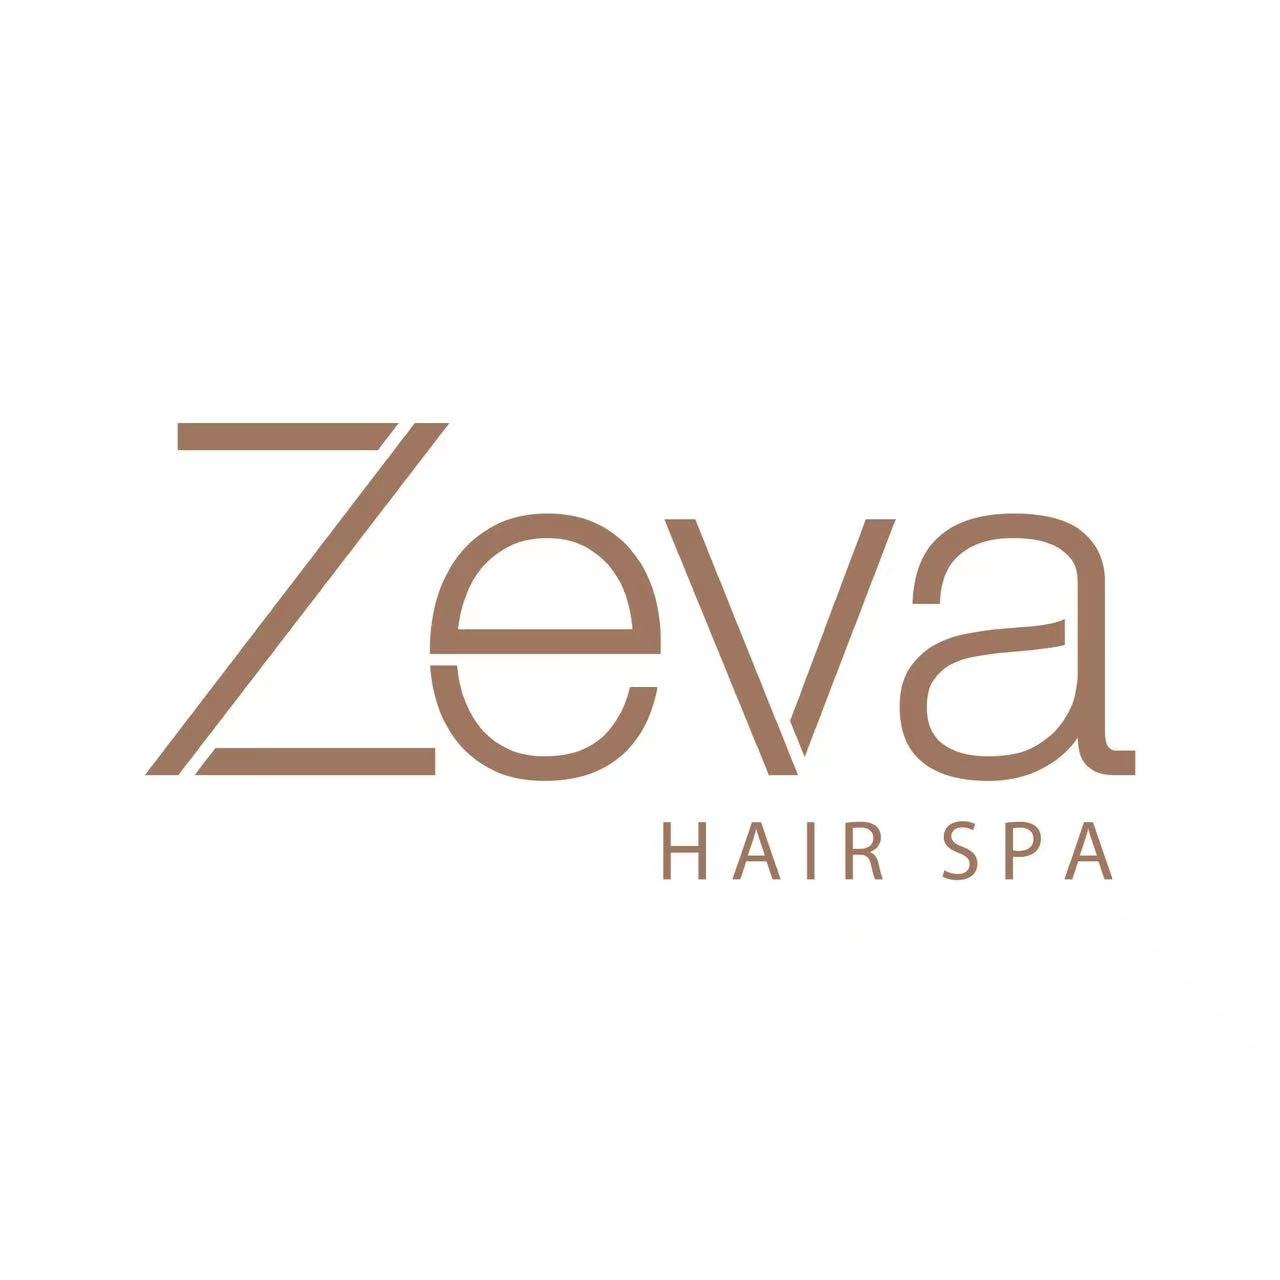 Zeva Hair Spa